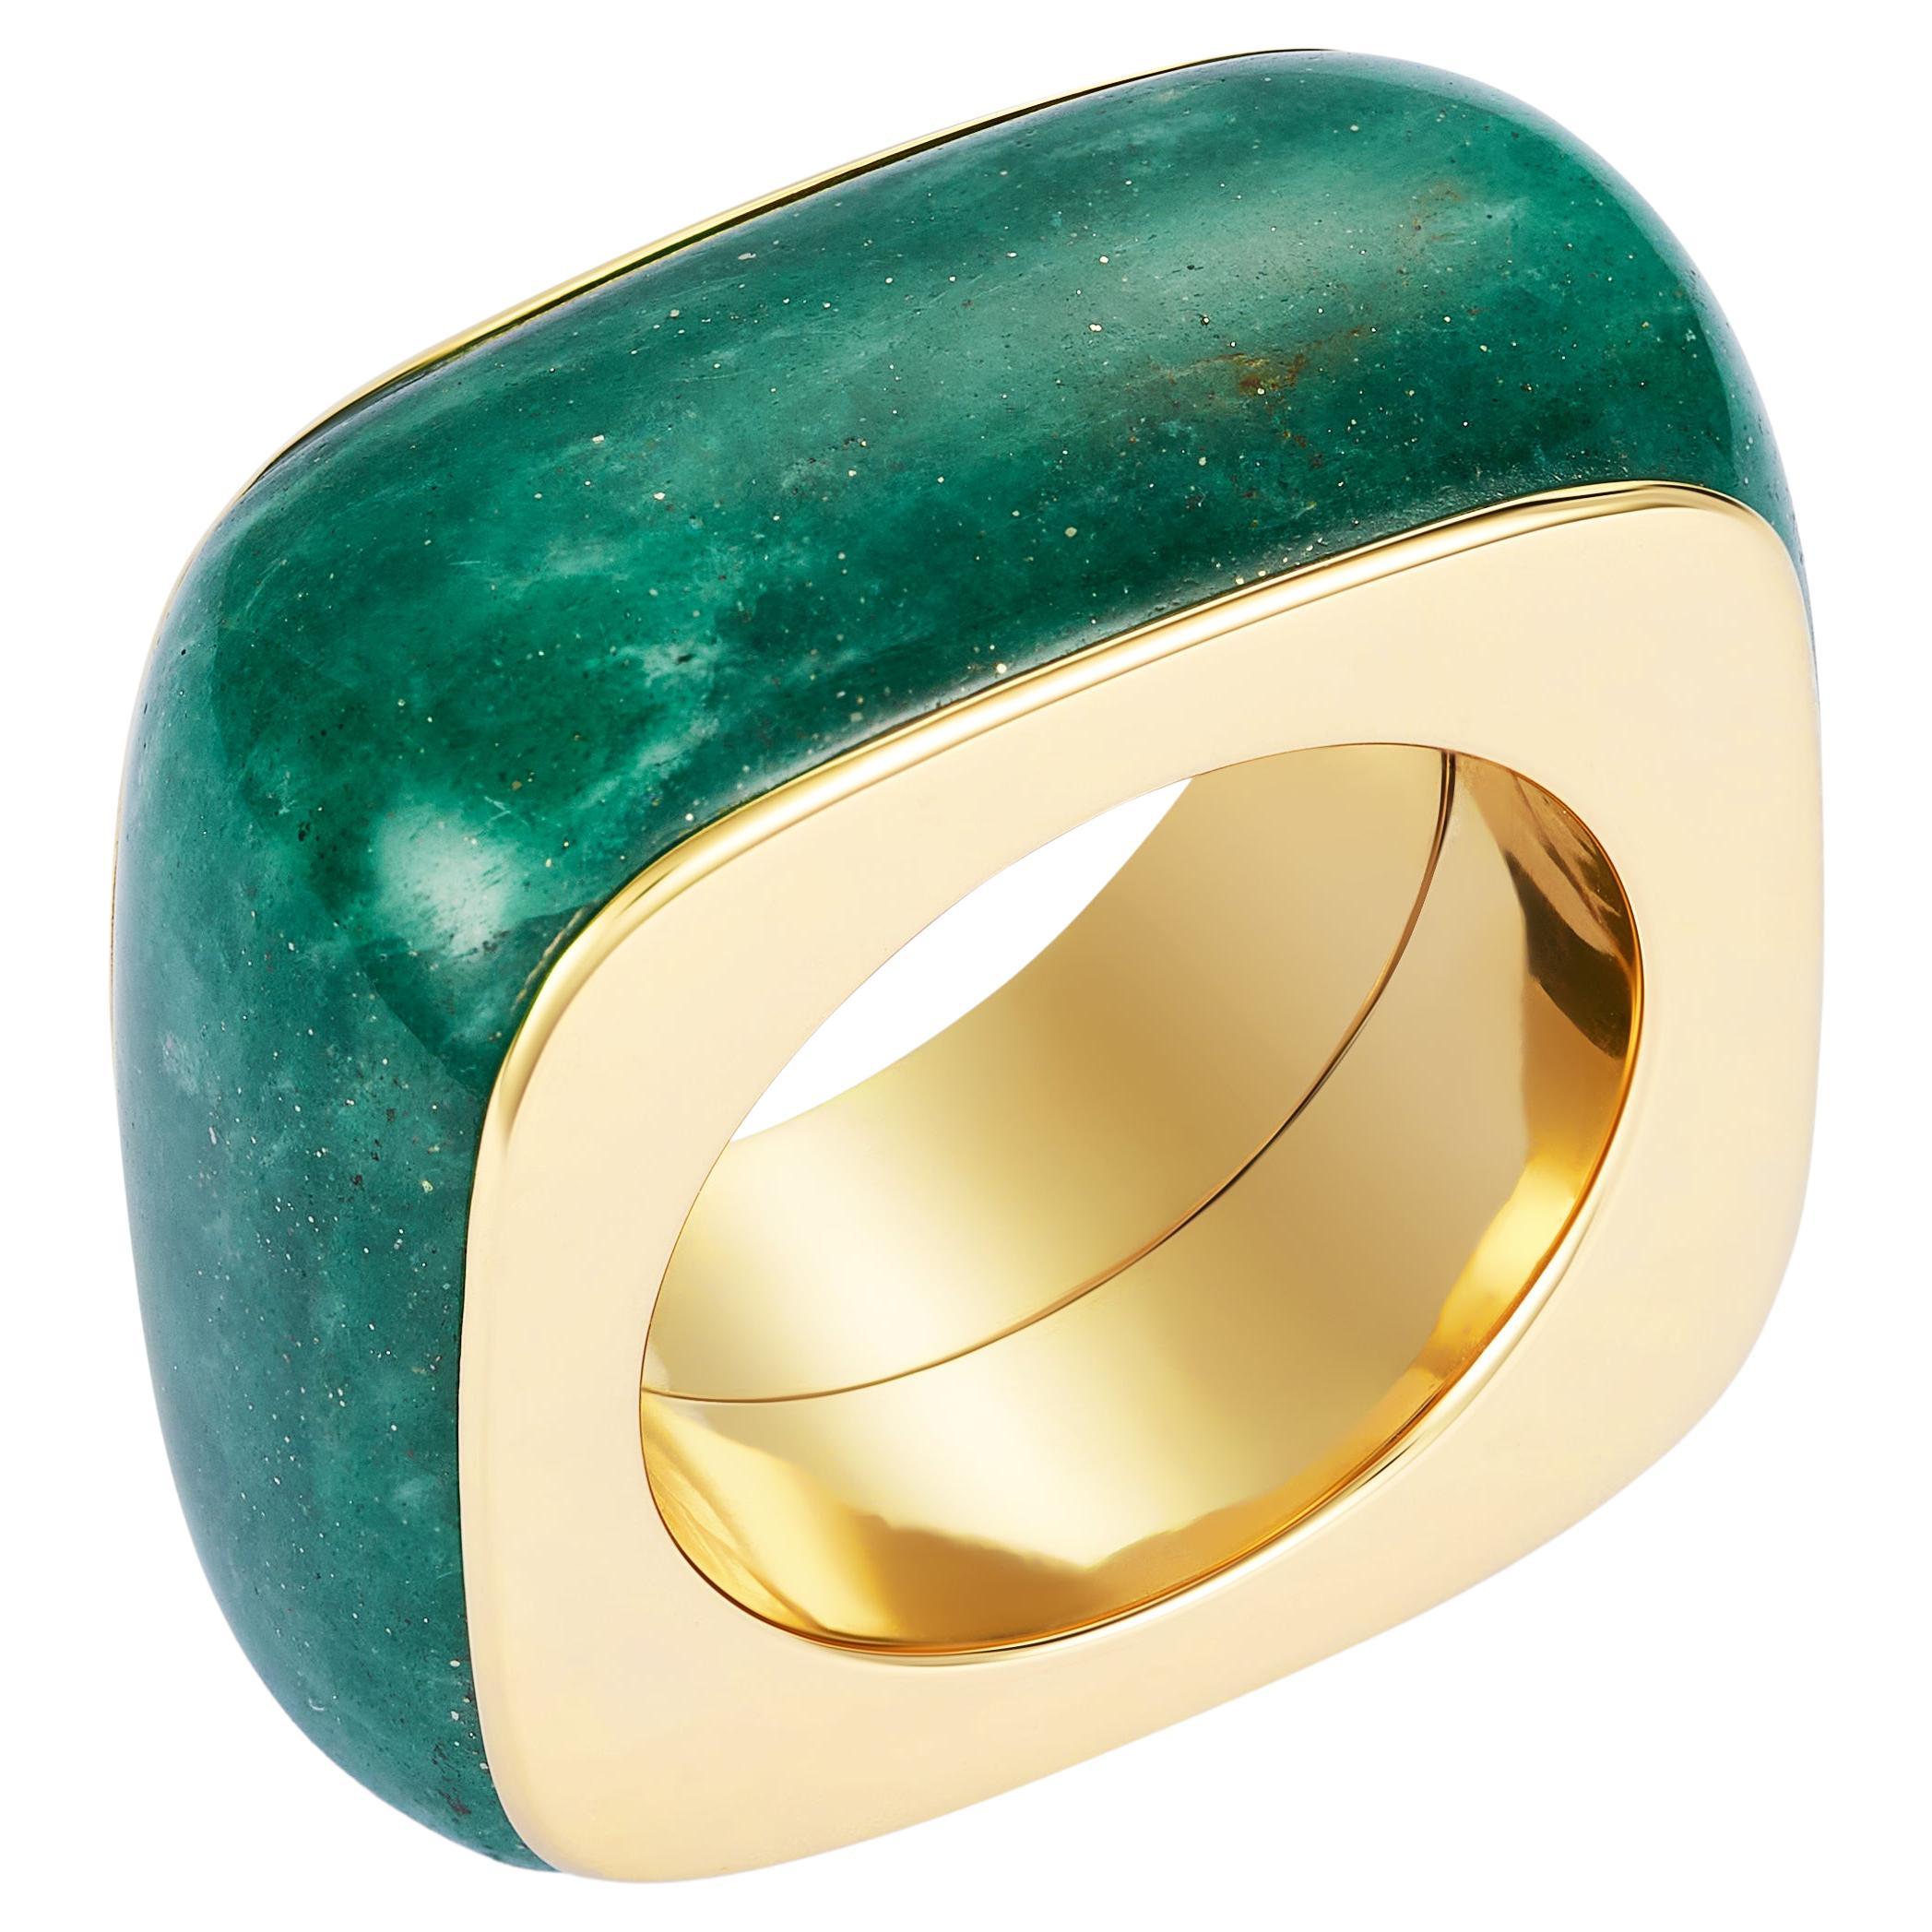 Dubini Pietra Aventurine Gem Stone 18K Yellow Gold Ring